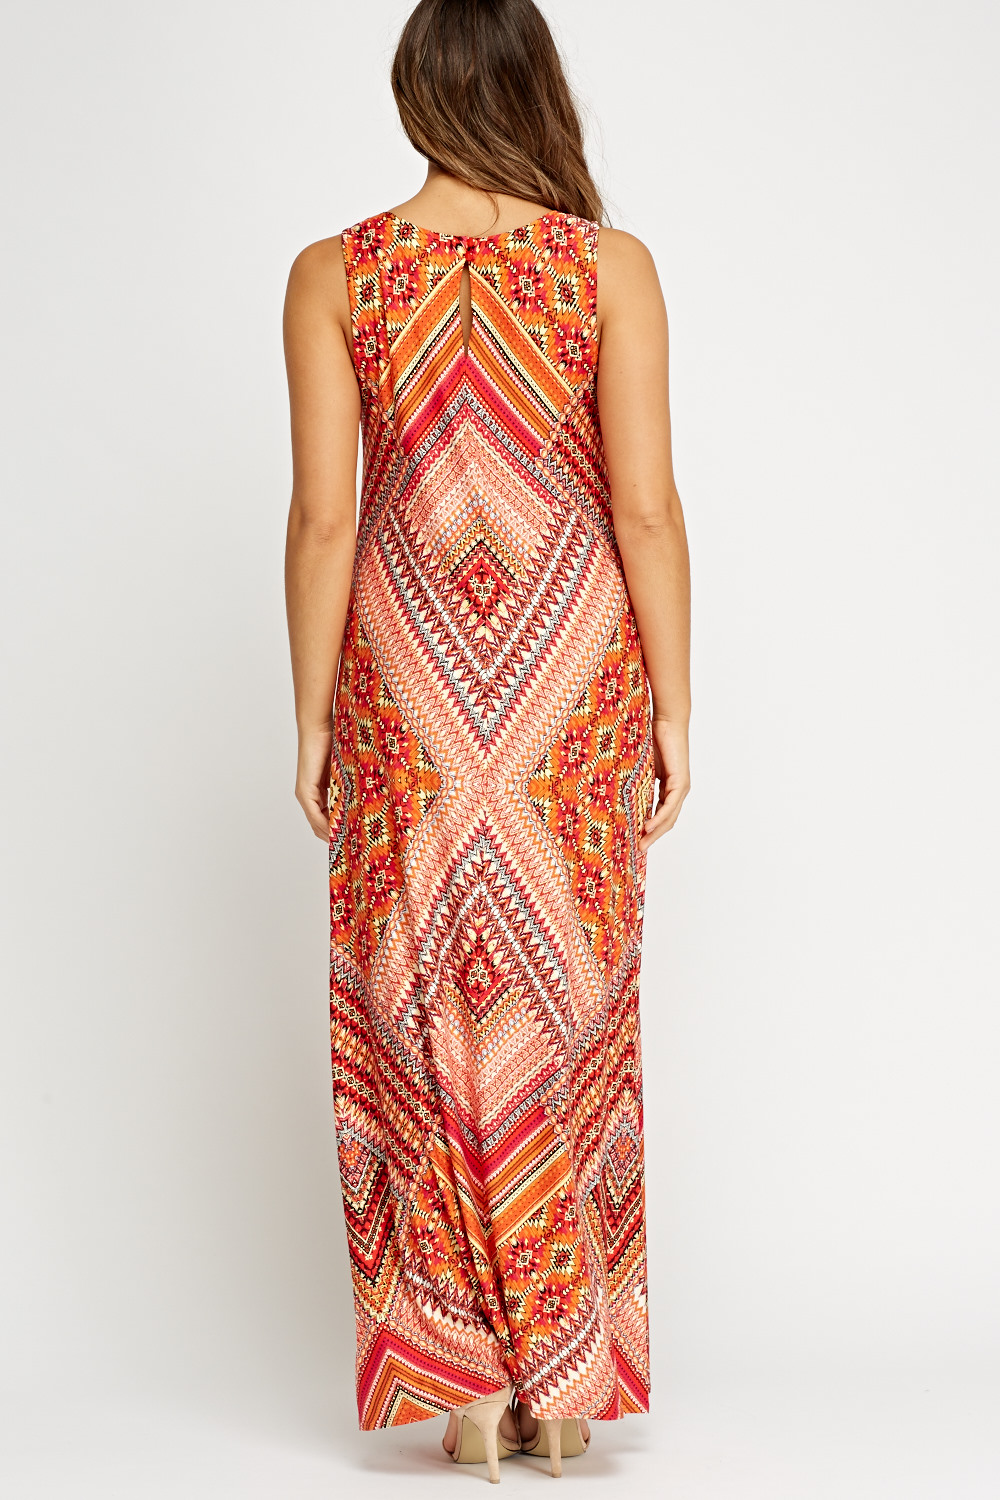 Aztec Printed Maxi Dress - Just $7